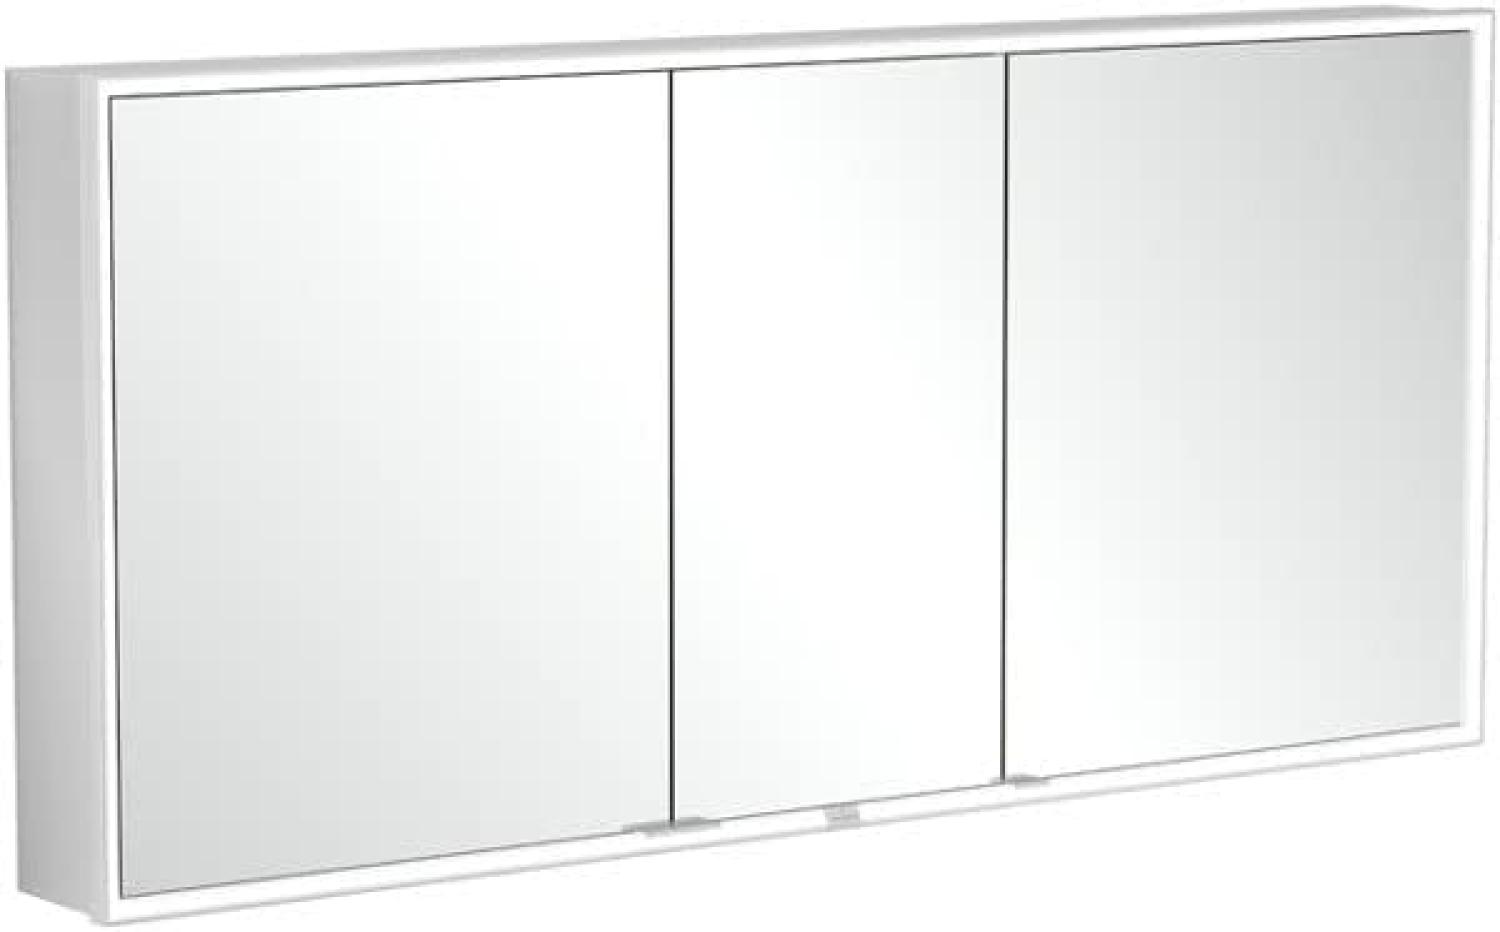 Villeroy & Boch My View Now, Spiegelschrank für Wandeinbau mit Beleuchtung, 1600x750x167,5 mm, mit Ein-/Ausschalter, Smart Home fähig, 3 Türen, A45816 - A4581600 Bild 1